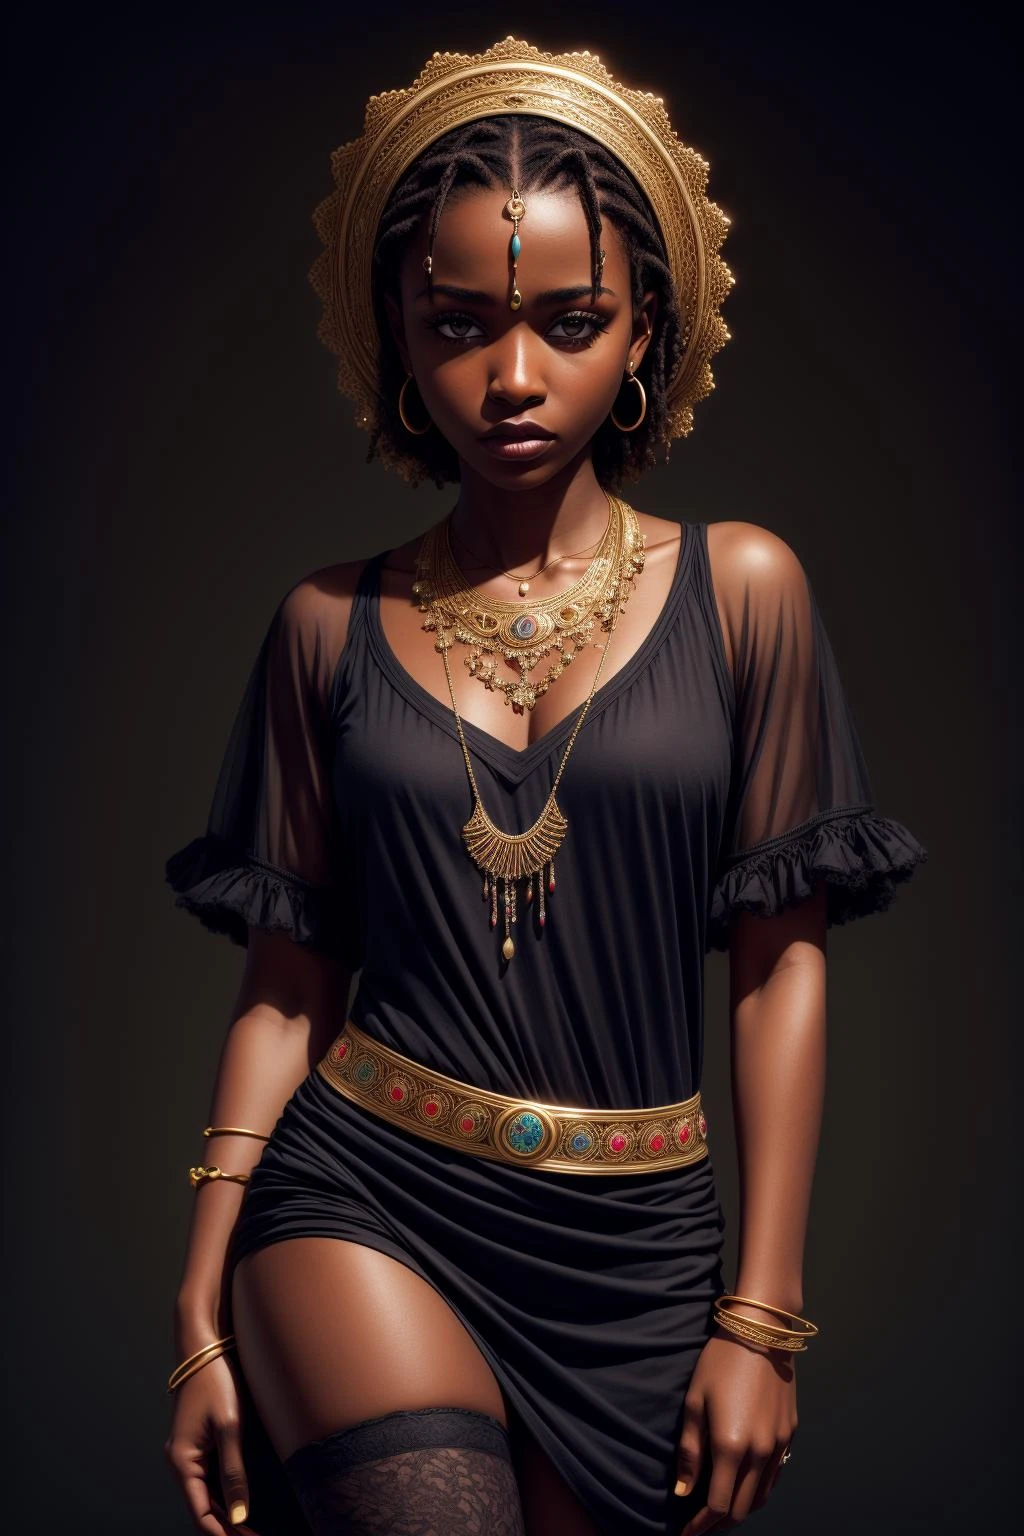 Obra de arte, melhor qualidade, resolução ultra alta, 1 garota africana de pele escura, (arte fractal:1.3), sombra profunda, tema escuro, totalmente vestido, colar, abandonado, 